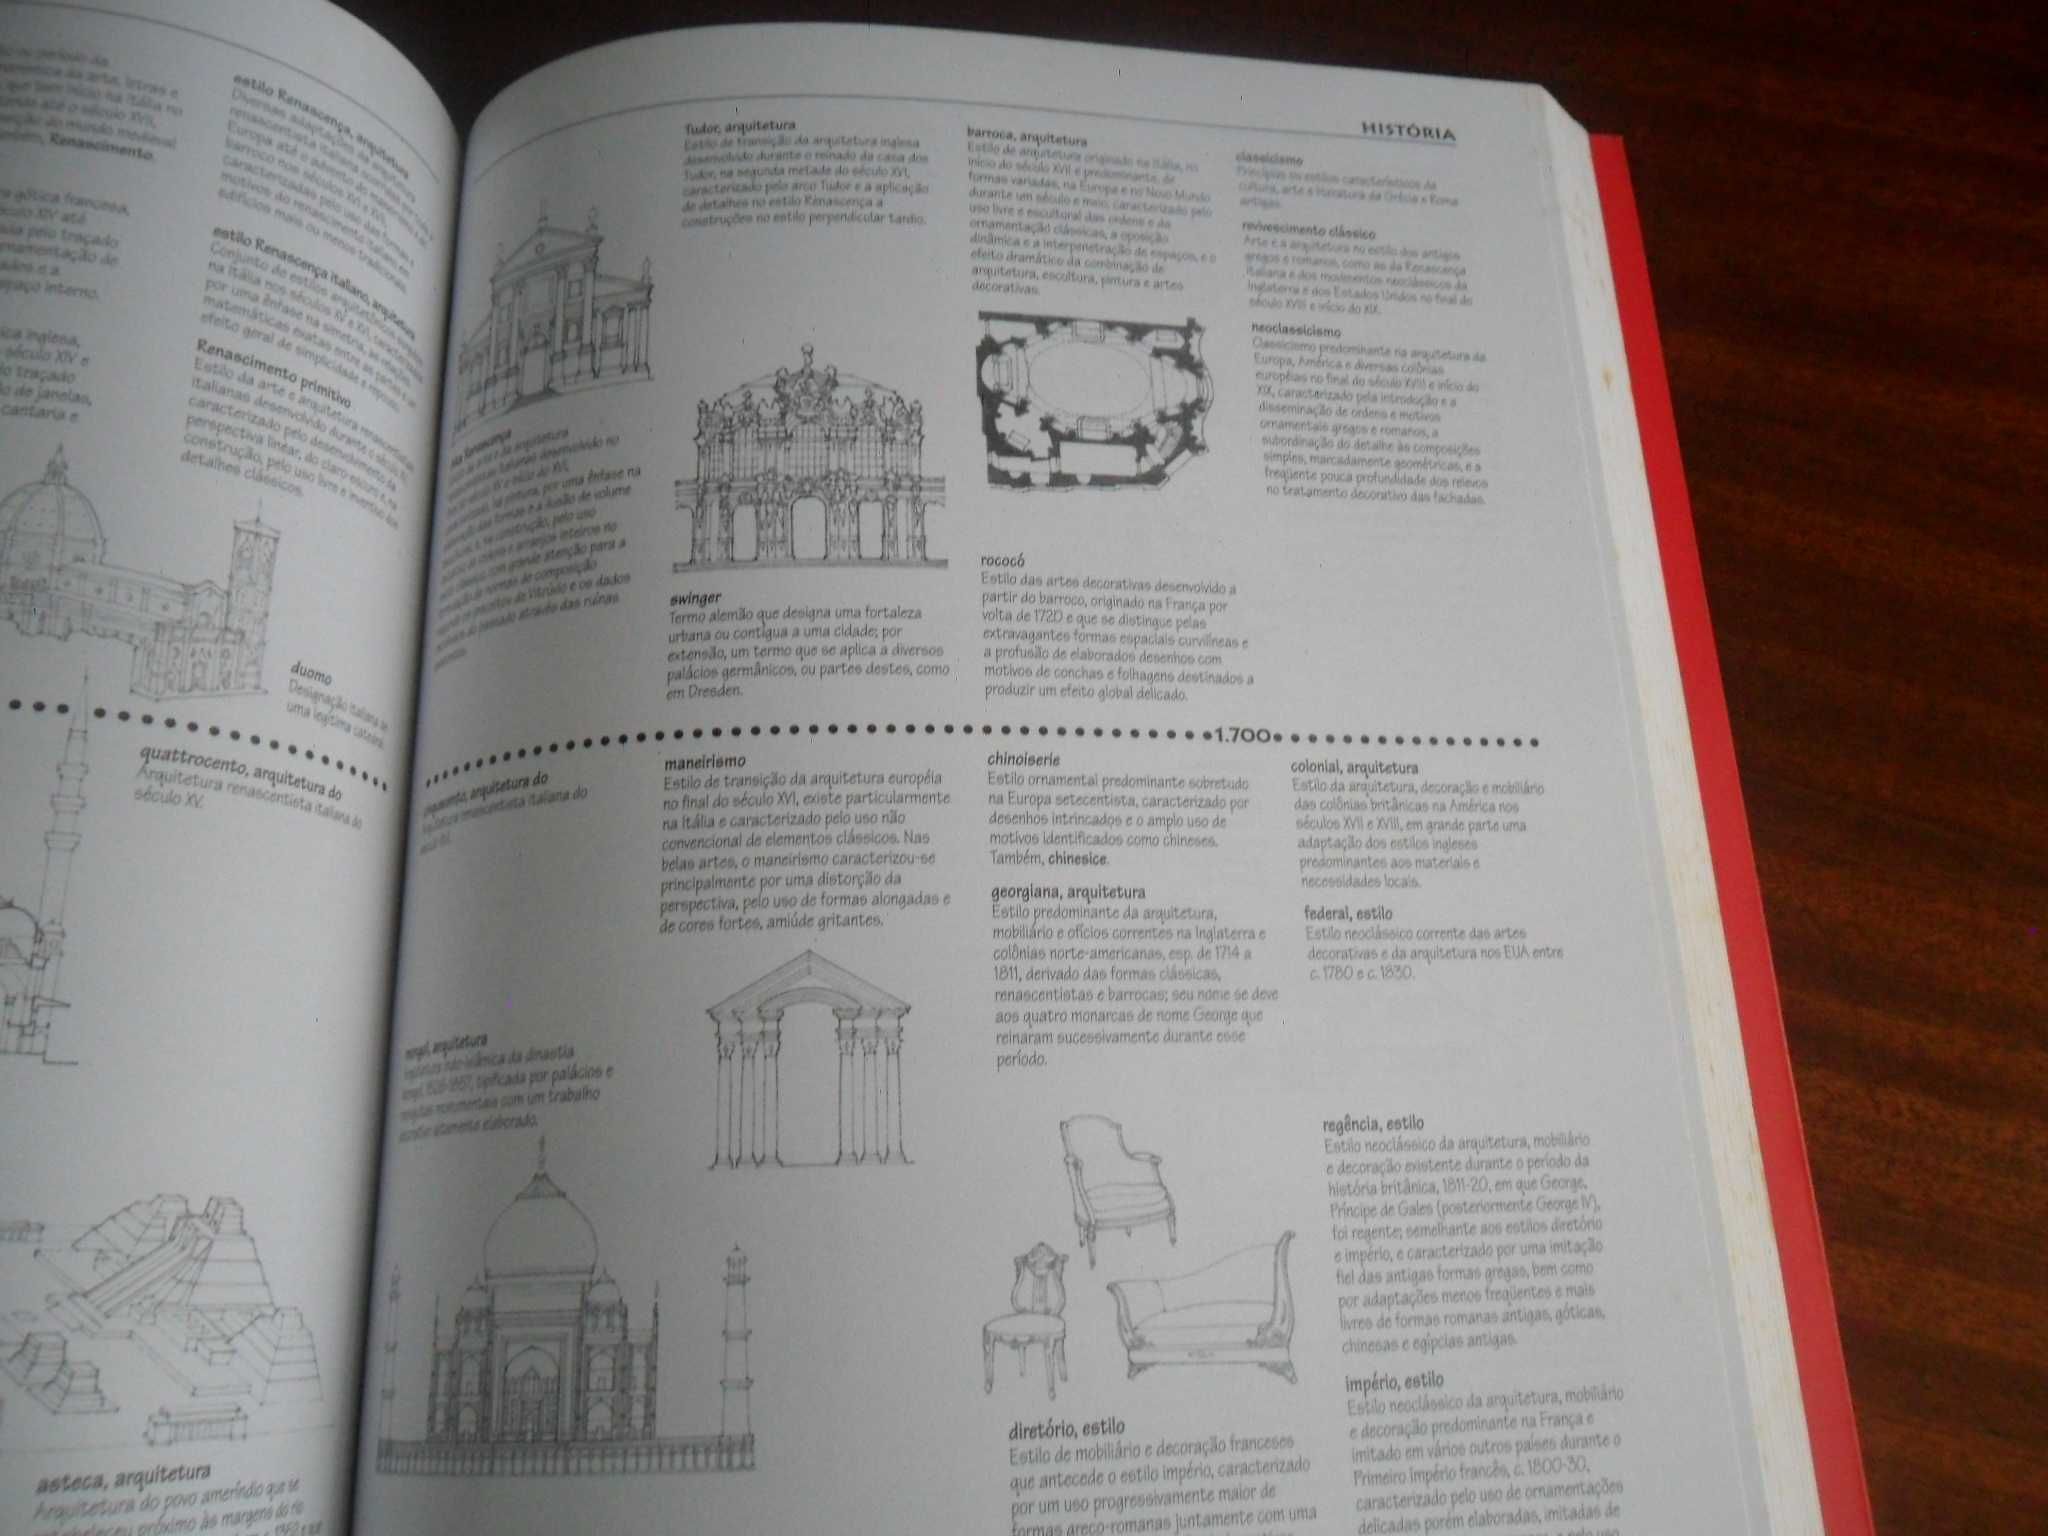 "Dicionário Visual de Arquitetura" de Francis D. K. Ching -Edição 2000